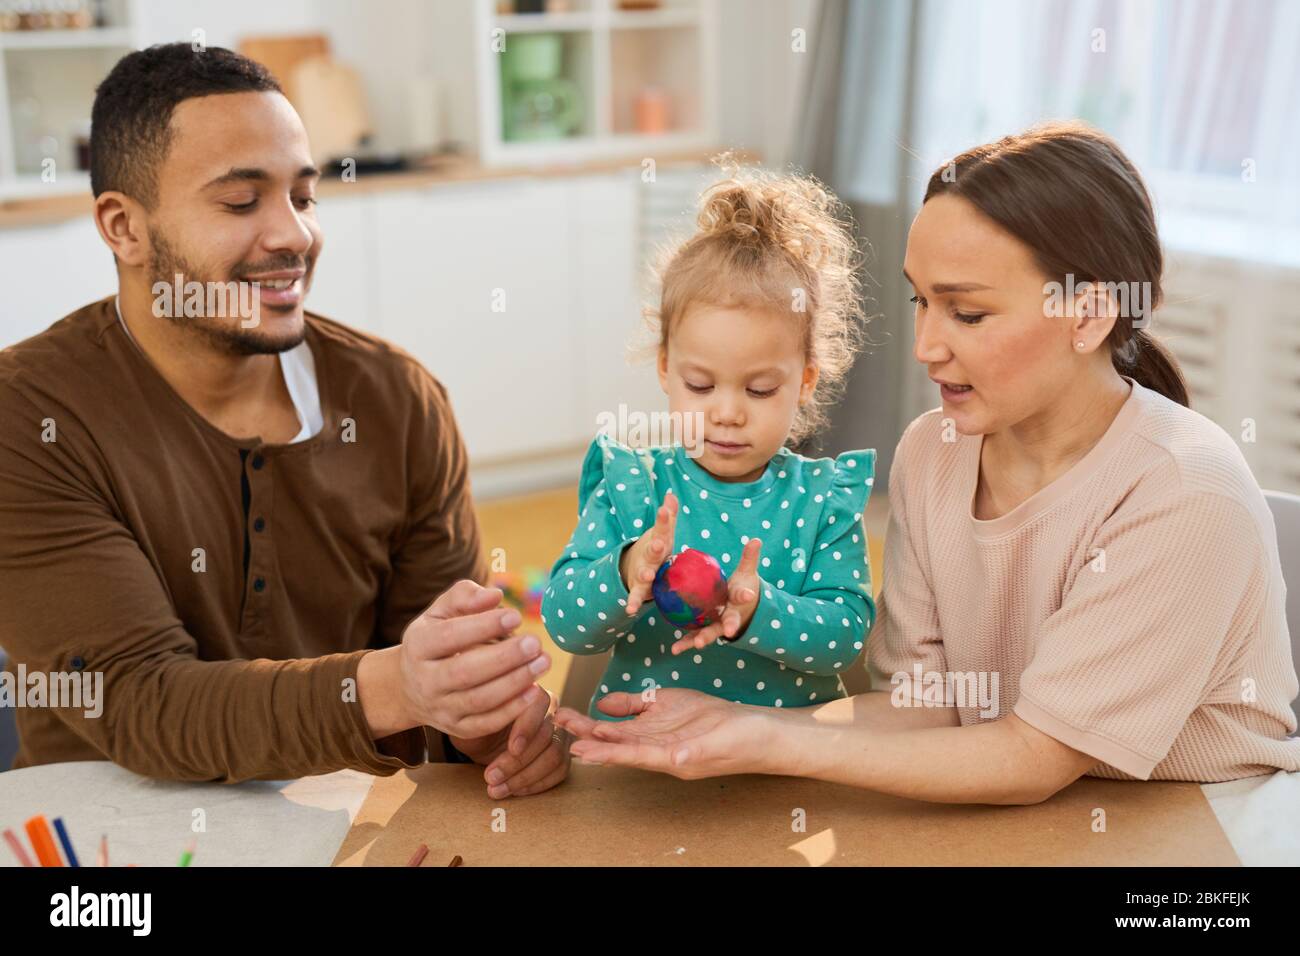 Les jeunes parents assis à la table aident leur petite fille à faire de la boule d'argile de modélisation colorée, tir horizontal Banque D'Images